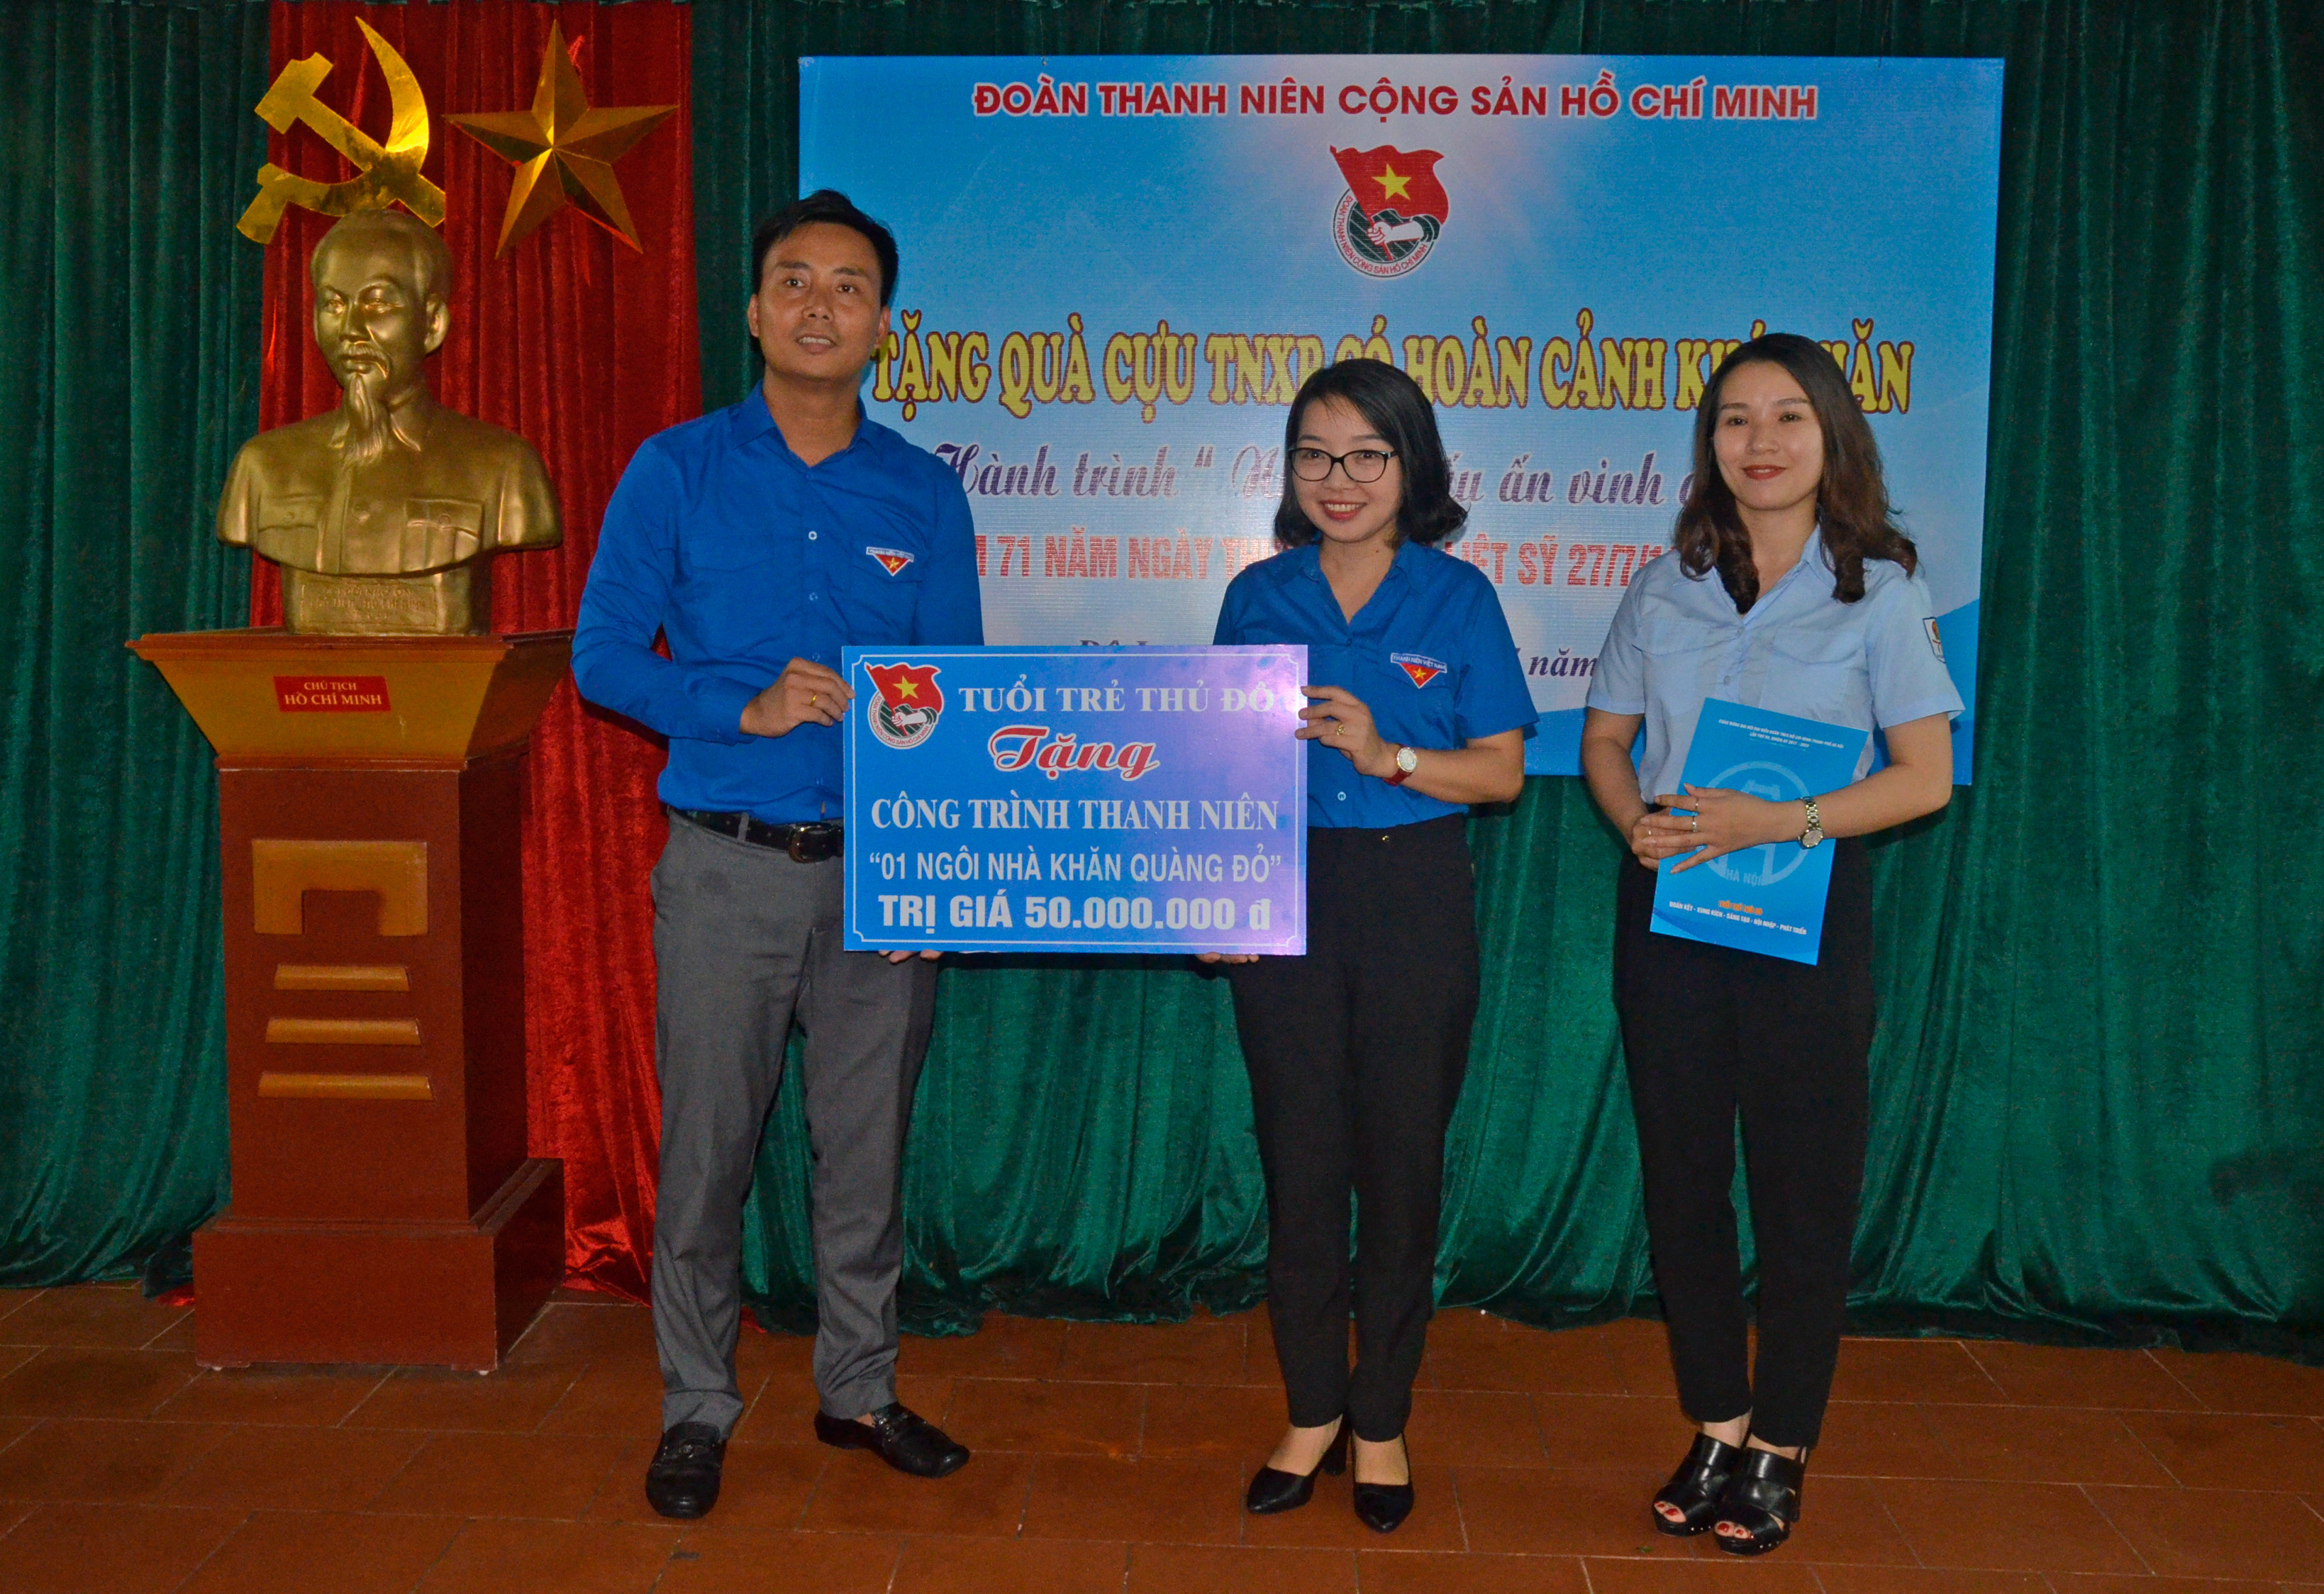 Thành đoàn Hà Nội trao tặng ngôi nhà khăn quàng đỏ trị giá 50 triệu đồng 